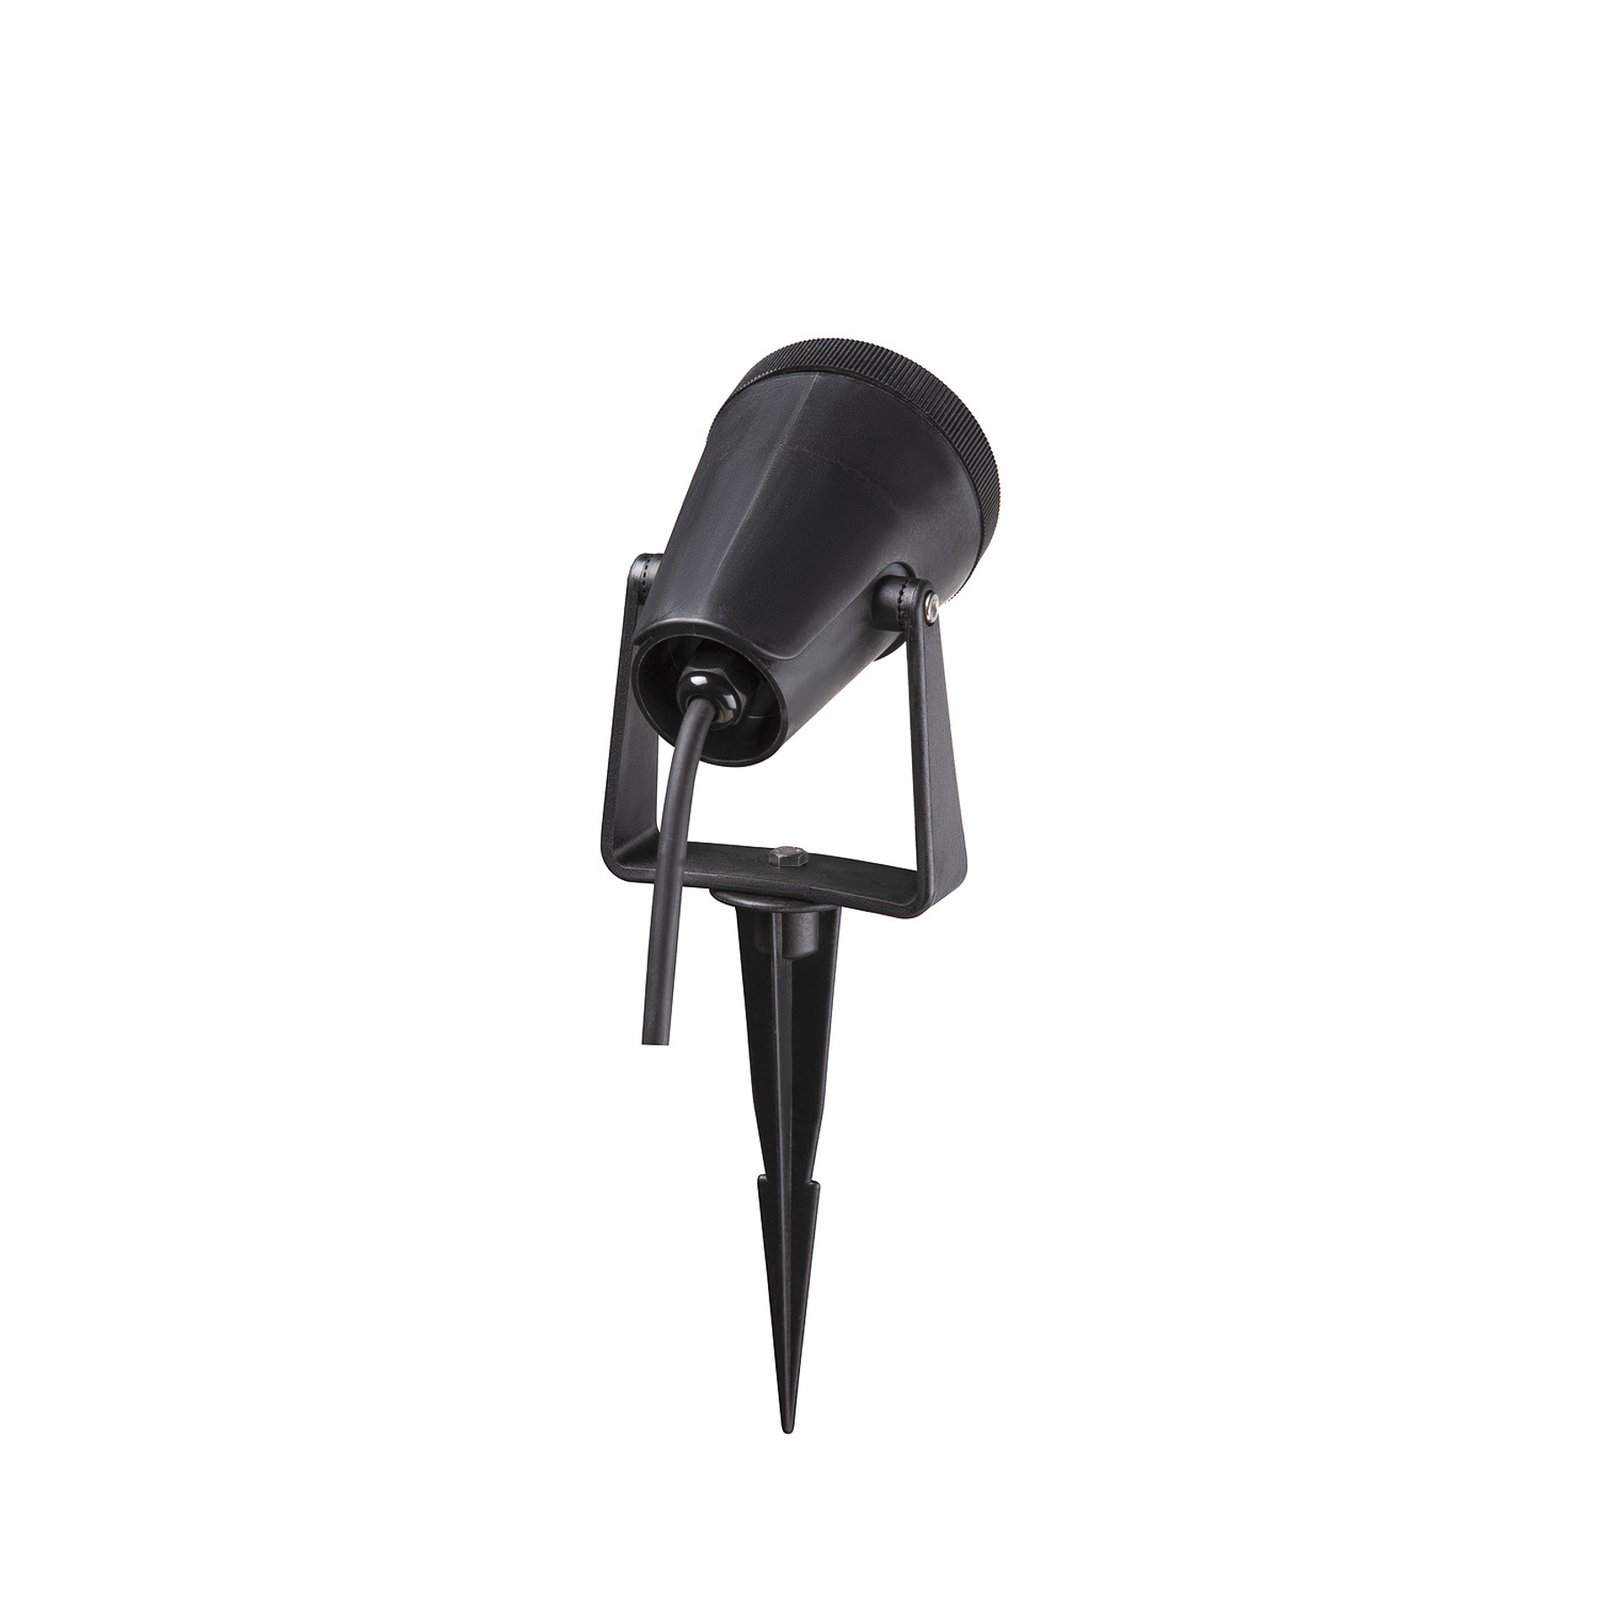 SLV zemaljska lampa Samrina, crna, plastika, visina 13 cm